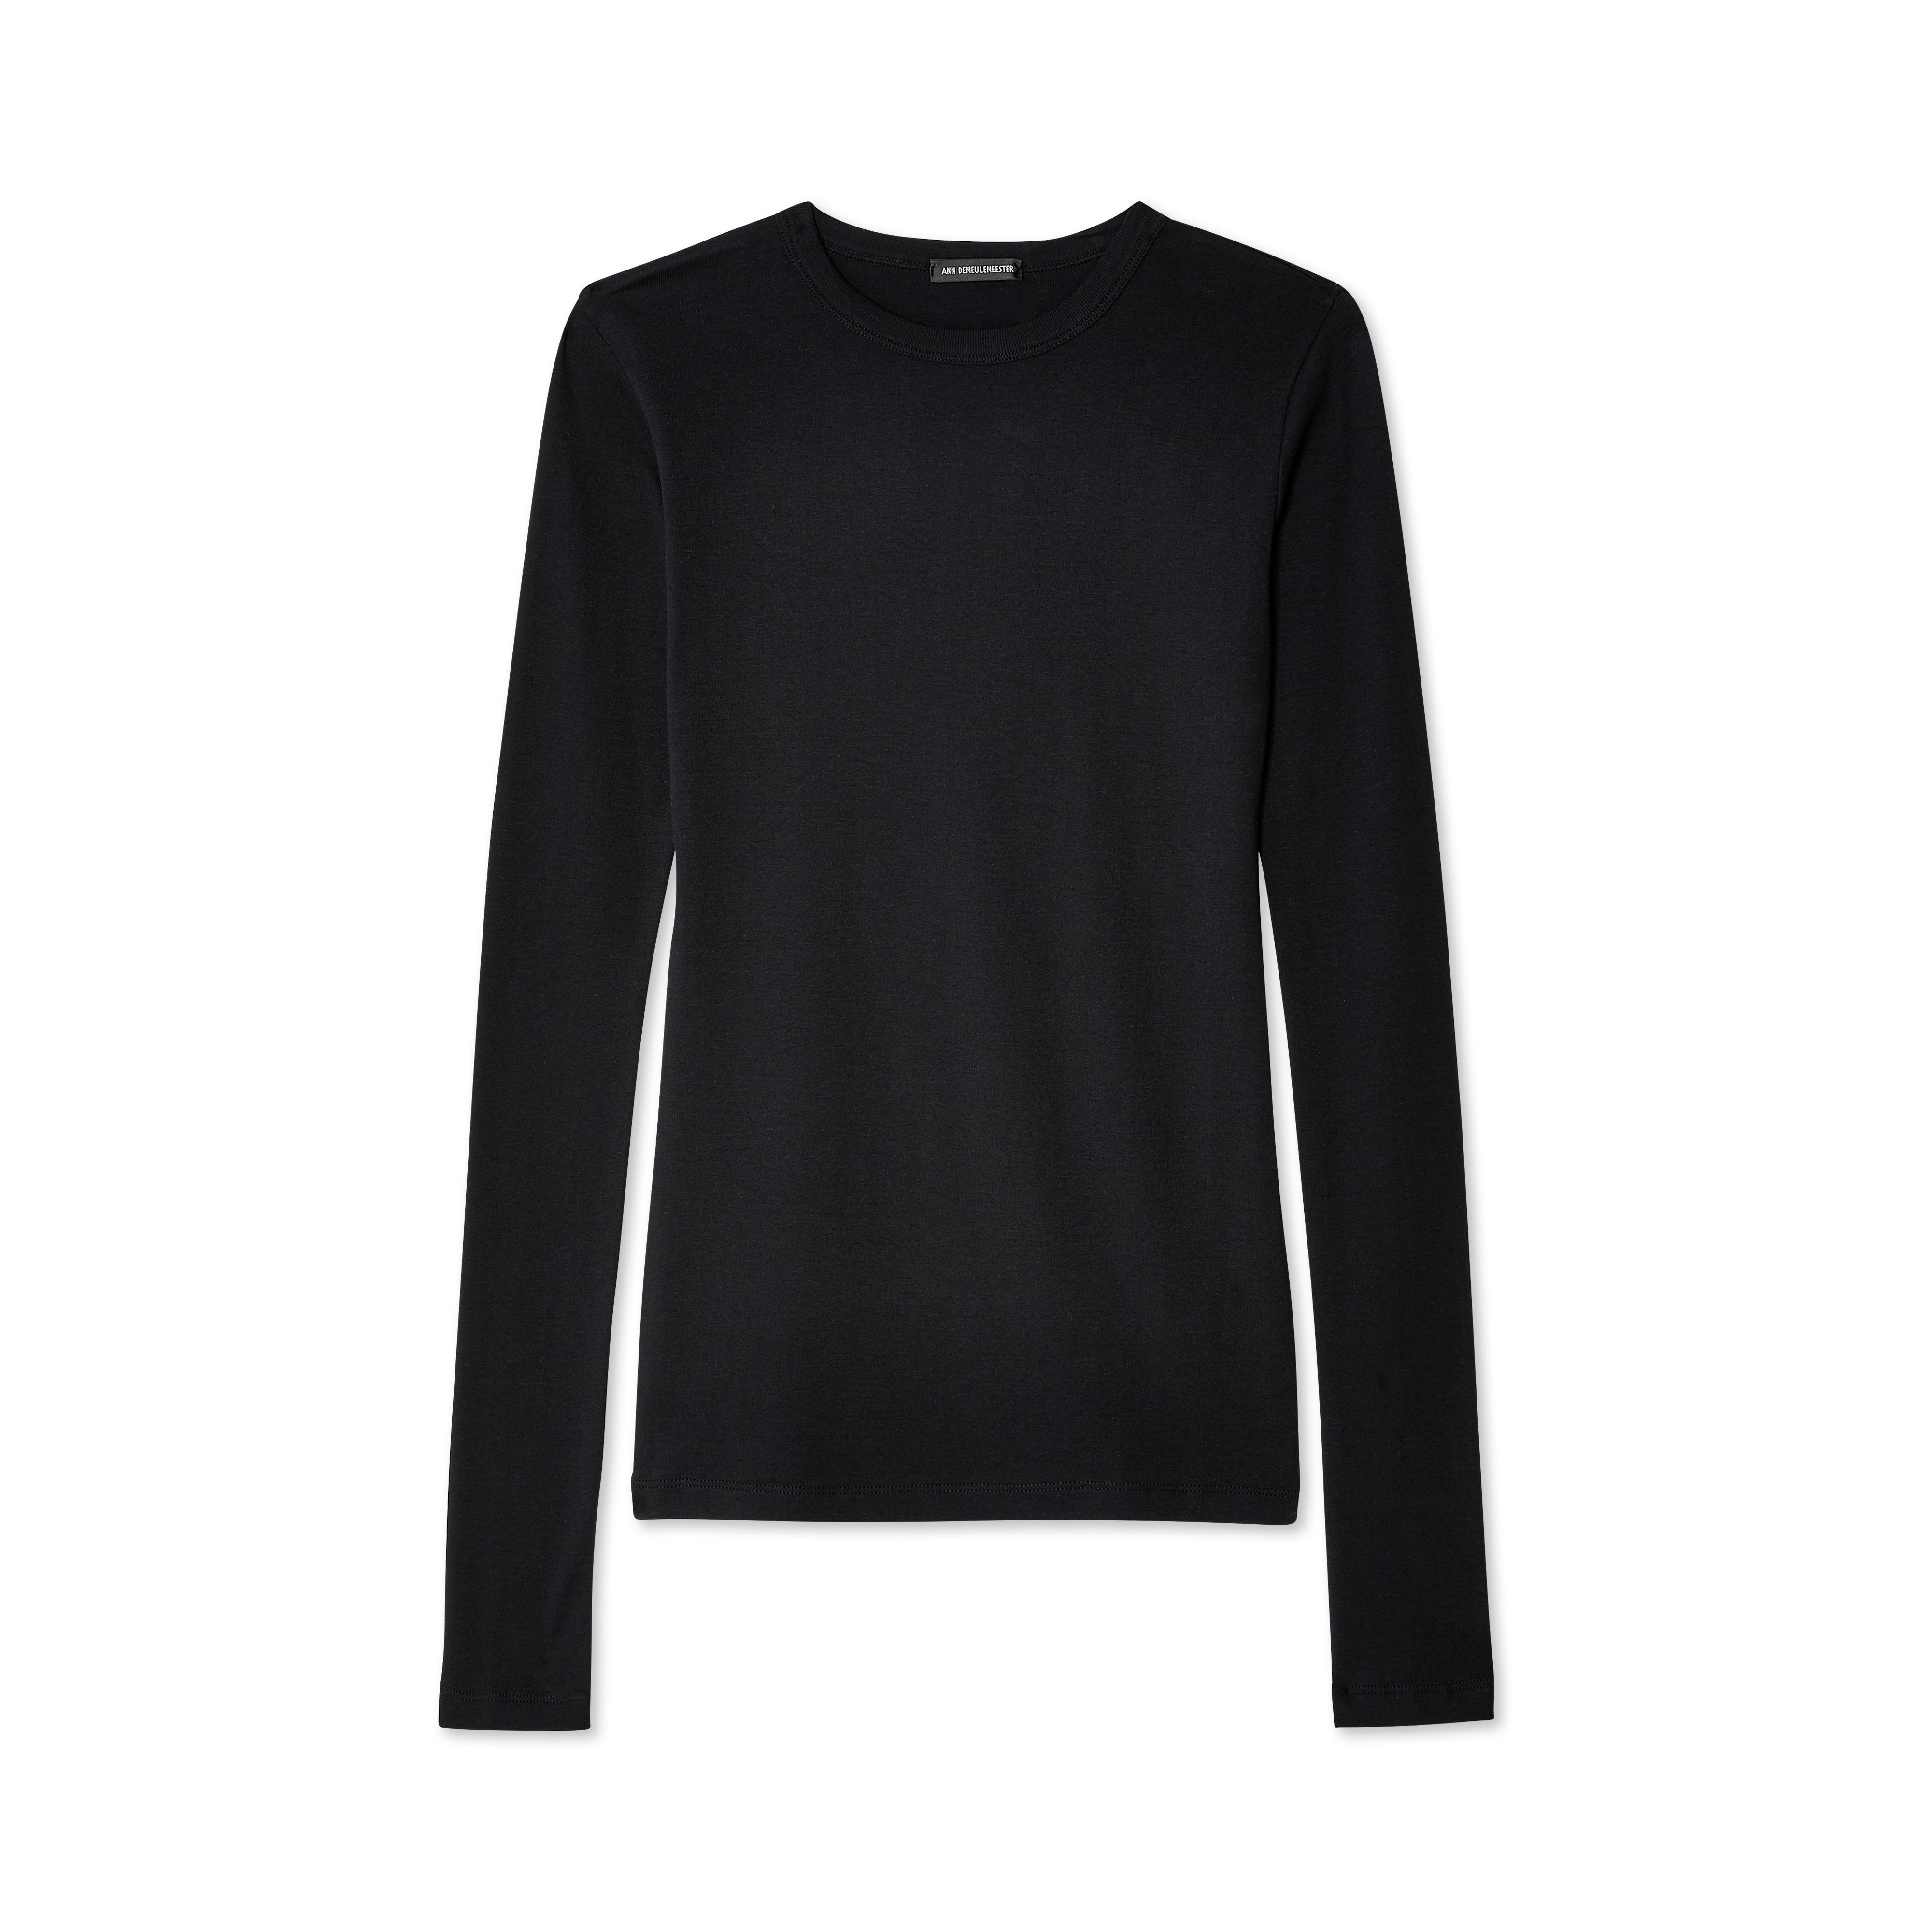 Ann Demeulemeester - Women's Fanie Long Sleeve T-Shirt - (Black